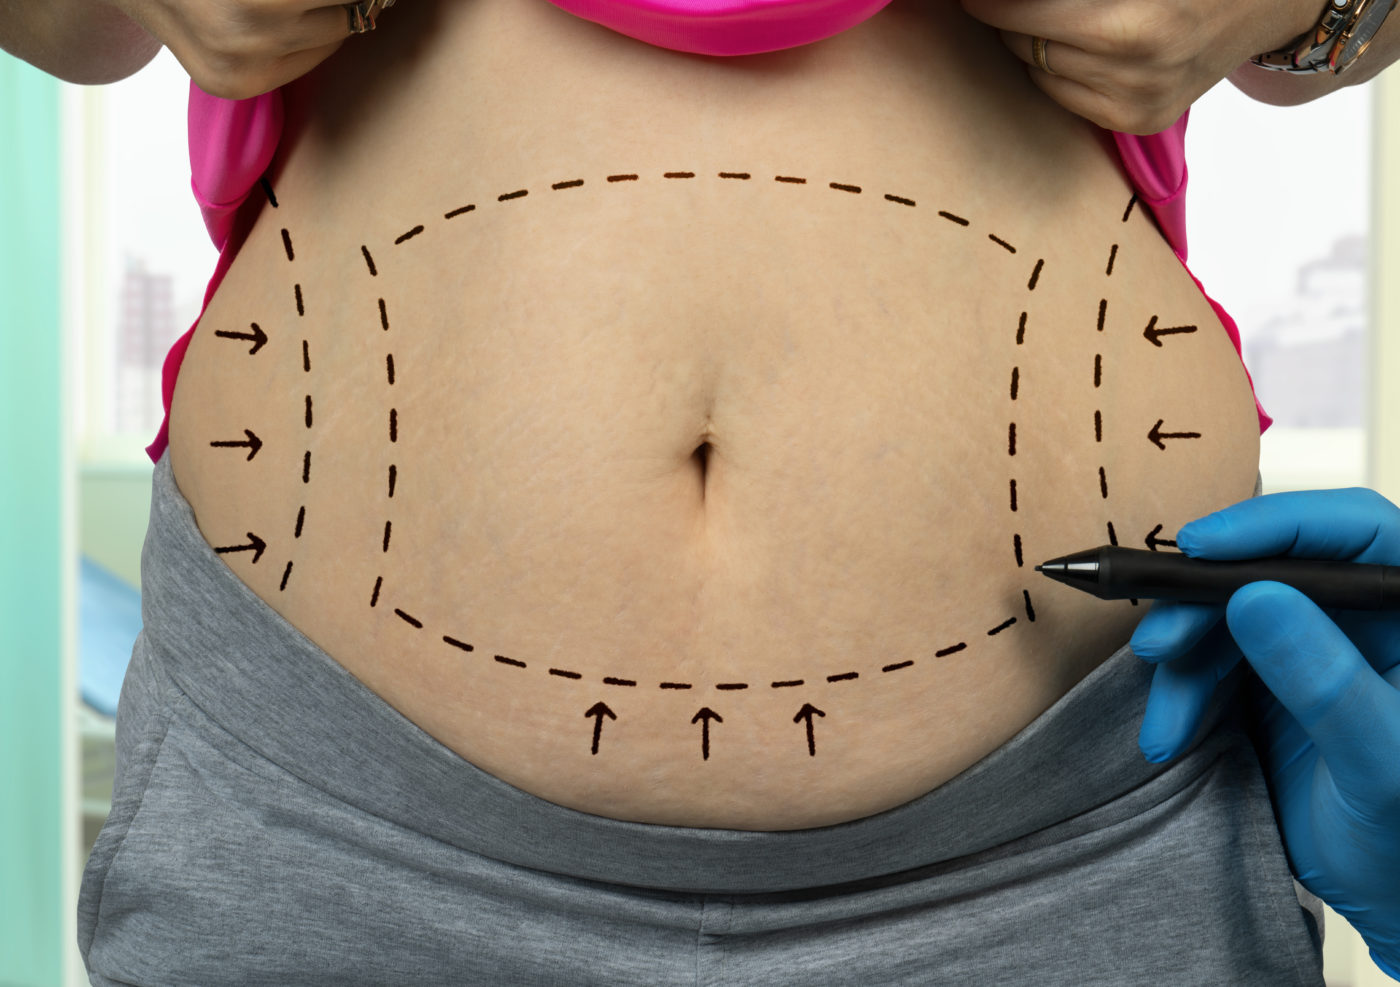 Graisse abdominale : qu'est-ce que c'est et comment l'éliminer ?